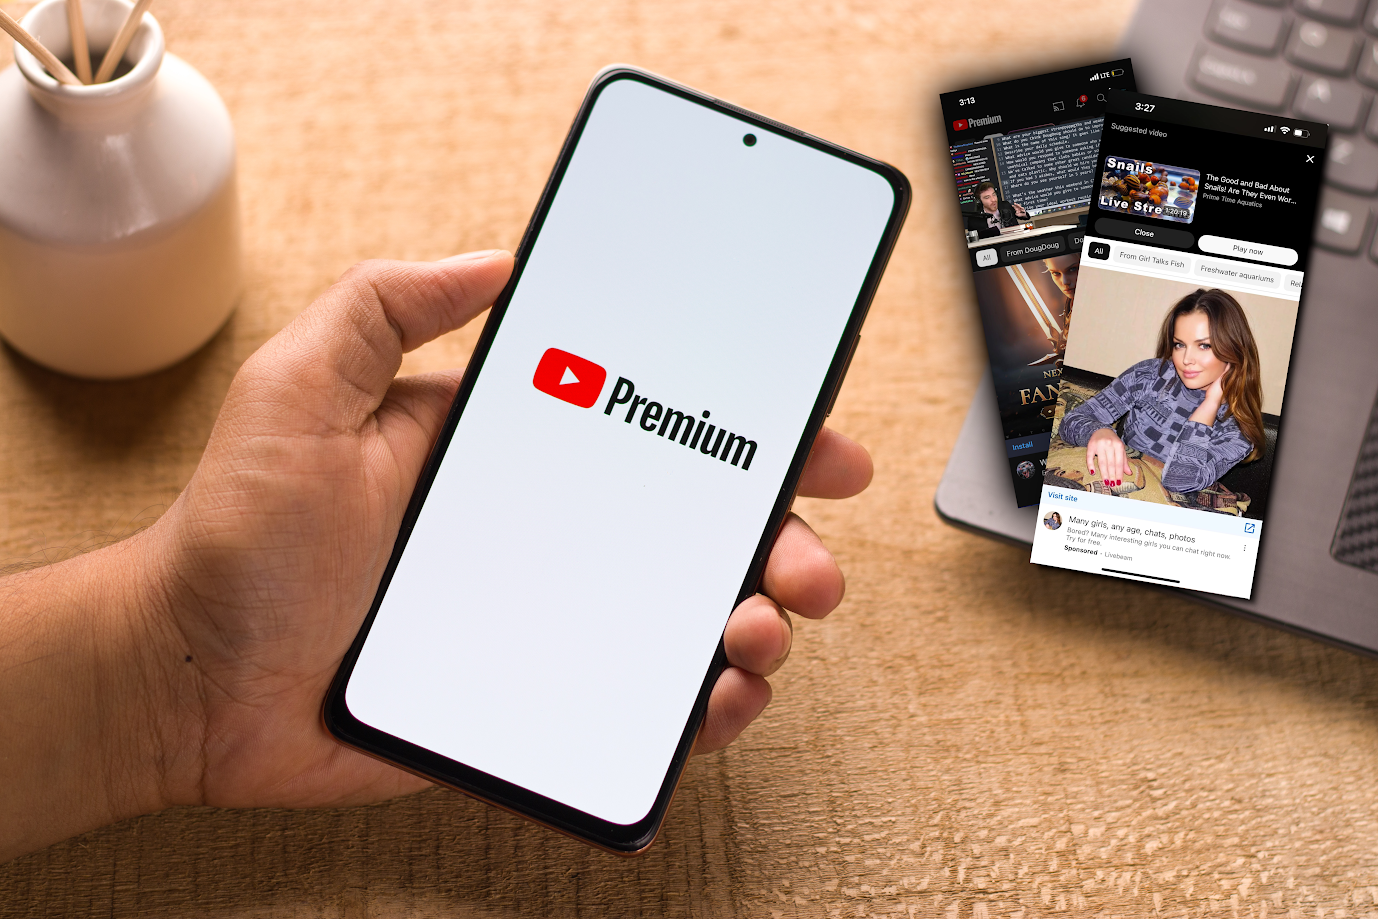 Ręka trzymająca smartfon z logo YouTube Premium na ekranie, w tle laptop z widocznymi kartami przeglądarki.